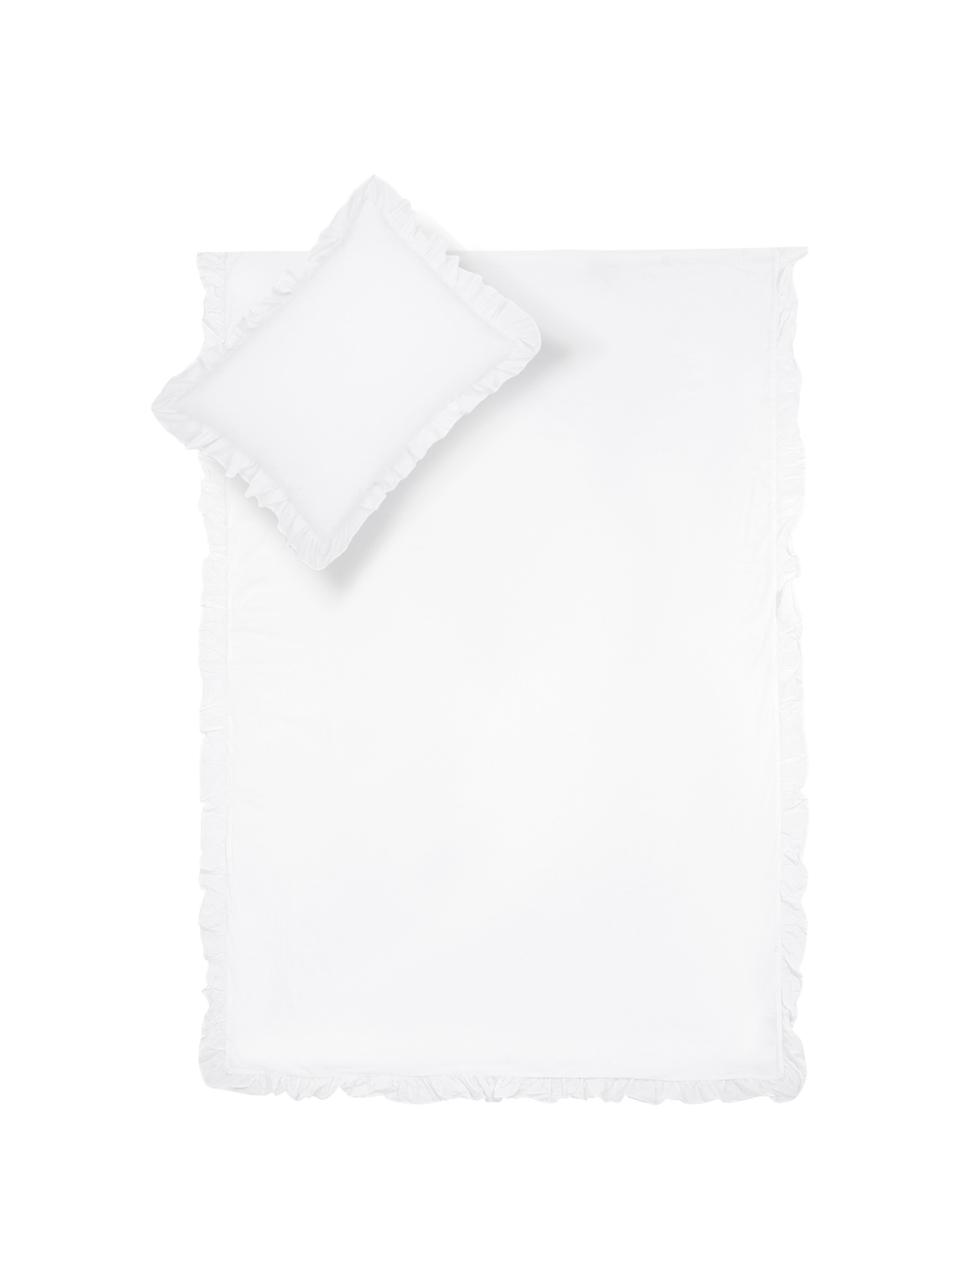 Parure copripiumino in cotone lavato Florence, Tessuto: percalle Densità del filo, Bianco, 255 x 200 cm + 2 federe 50 x 80 cm